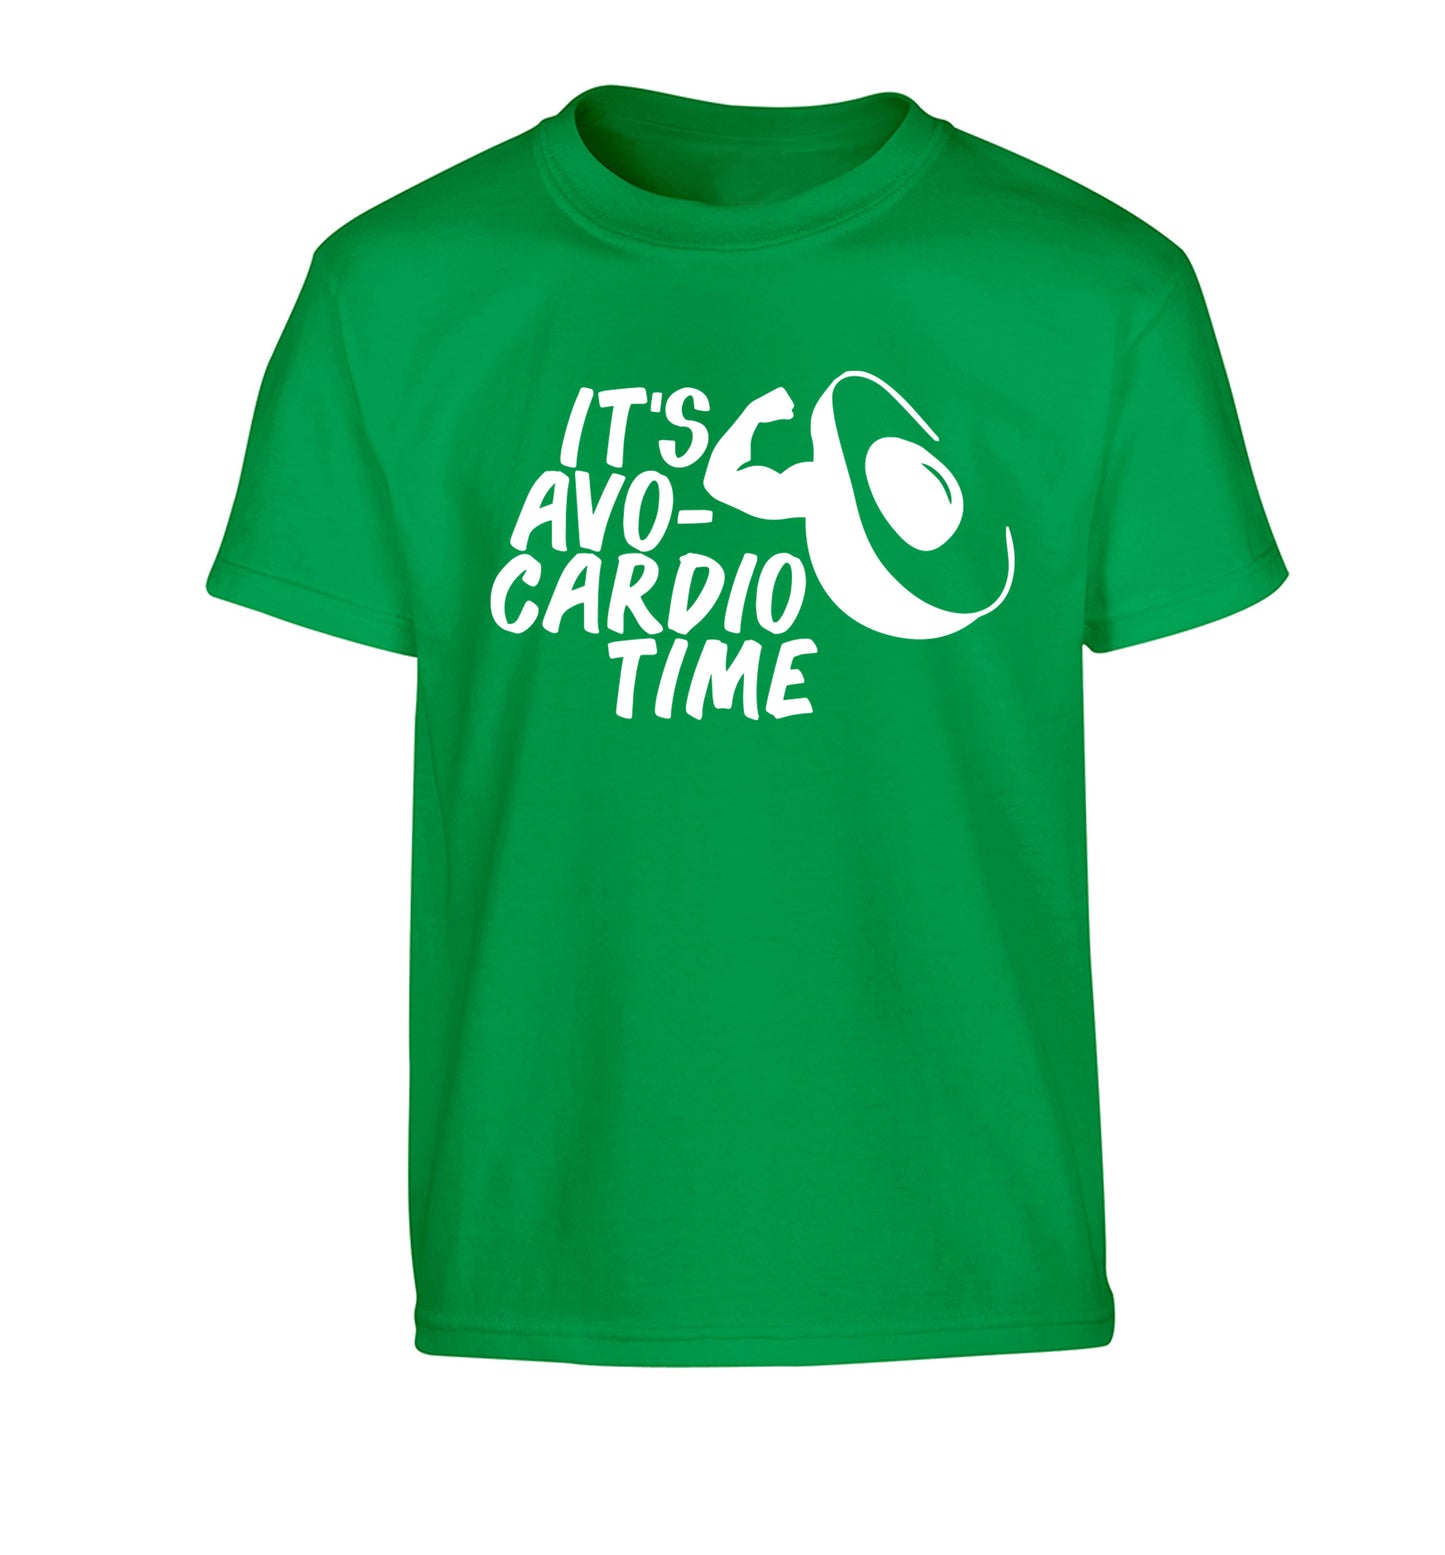 It's avo-cardio time Children's green Tshirt 12-14 Years